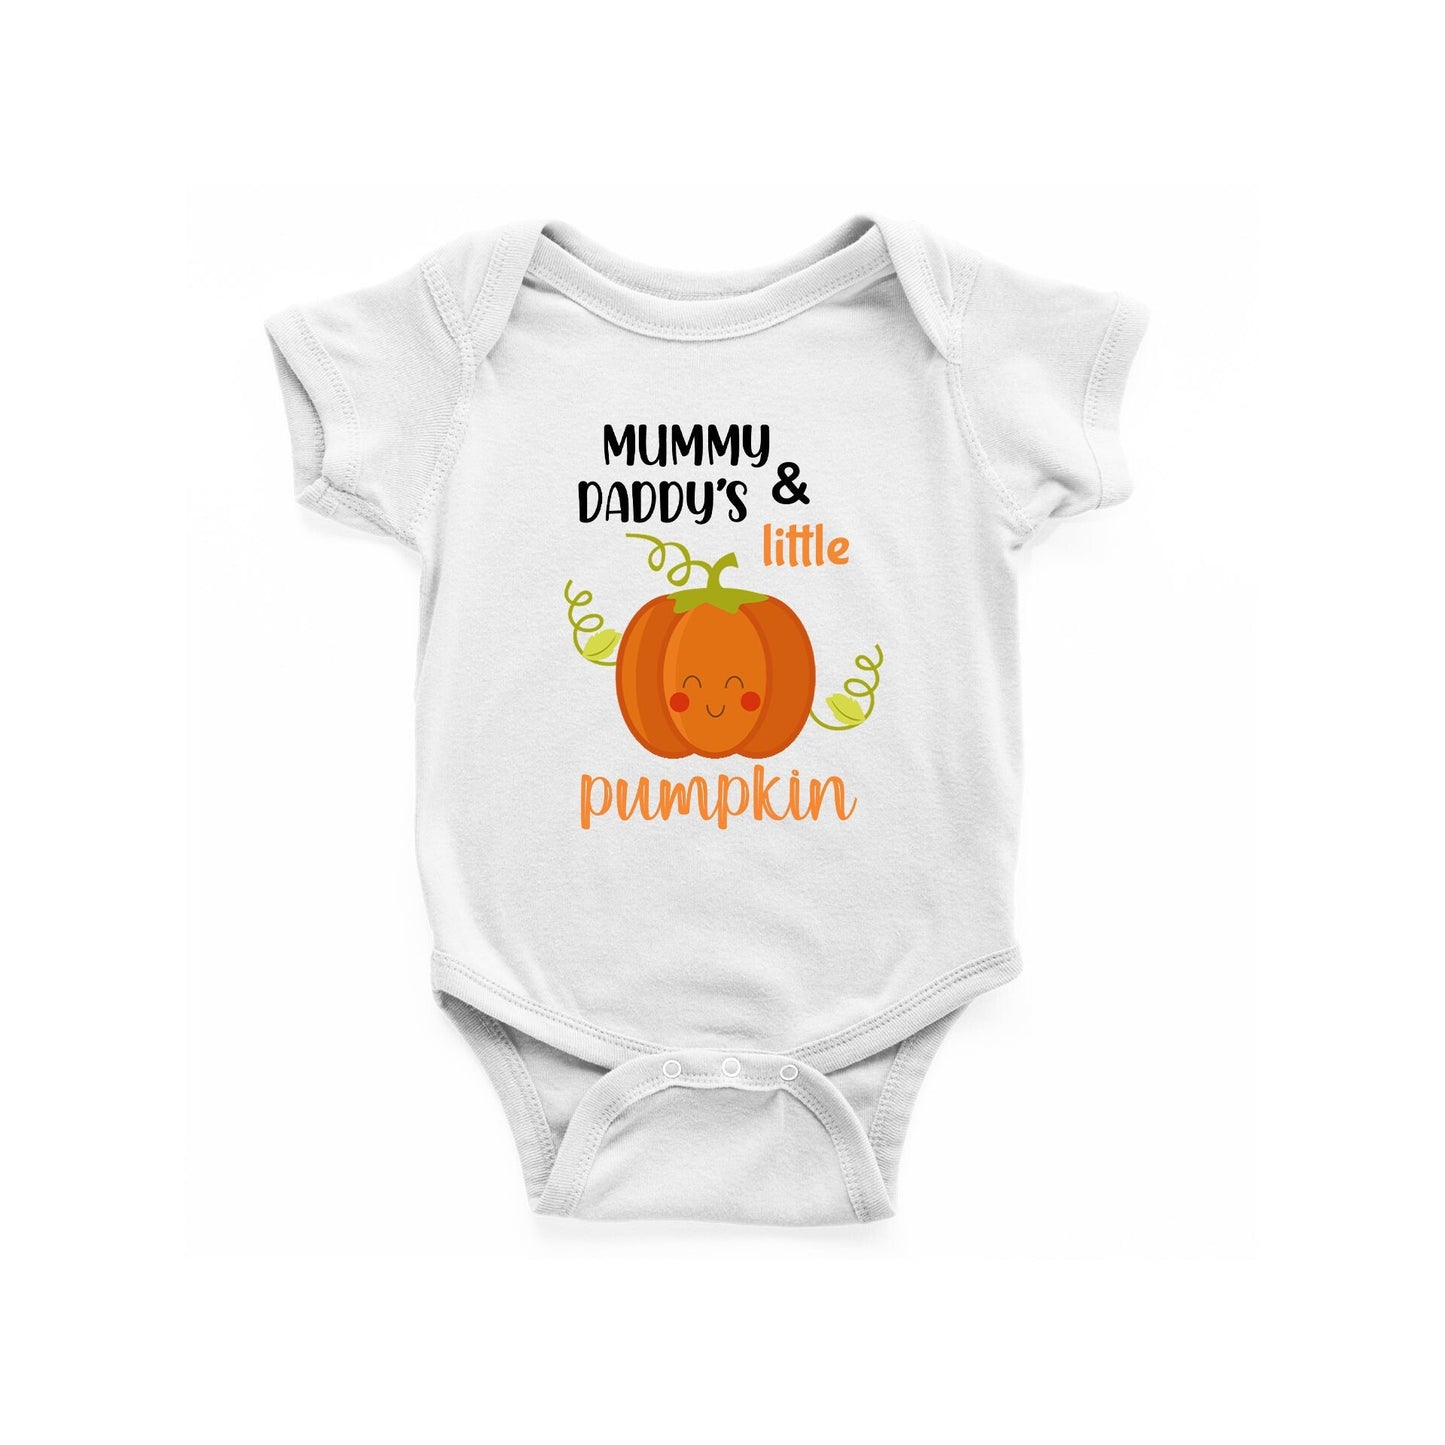 Mummy & daddy's little pumpkin Bodysuit